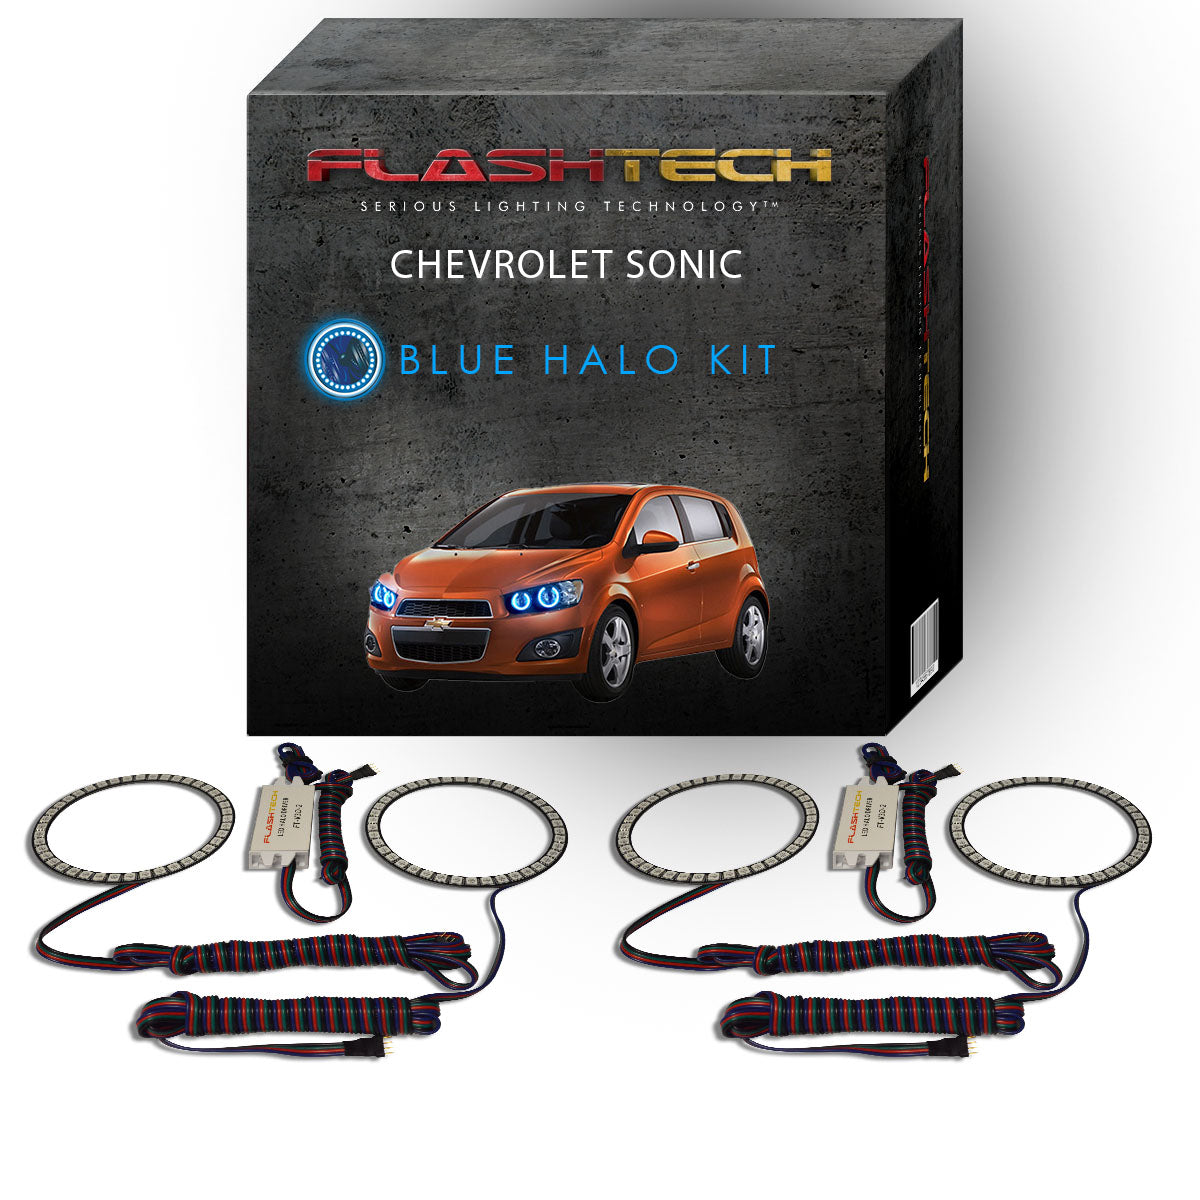 Chevrolet-Sonic-2012, 2013, 2014, 2015, 2016-LED-Halo-Headlights-RGB-No Remote-CY-SO1216-V3H